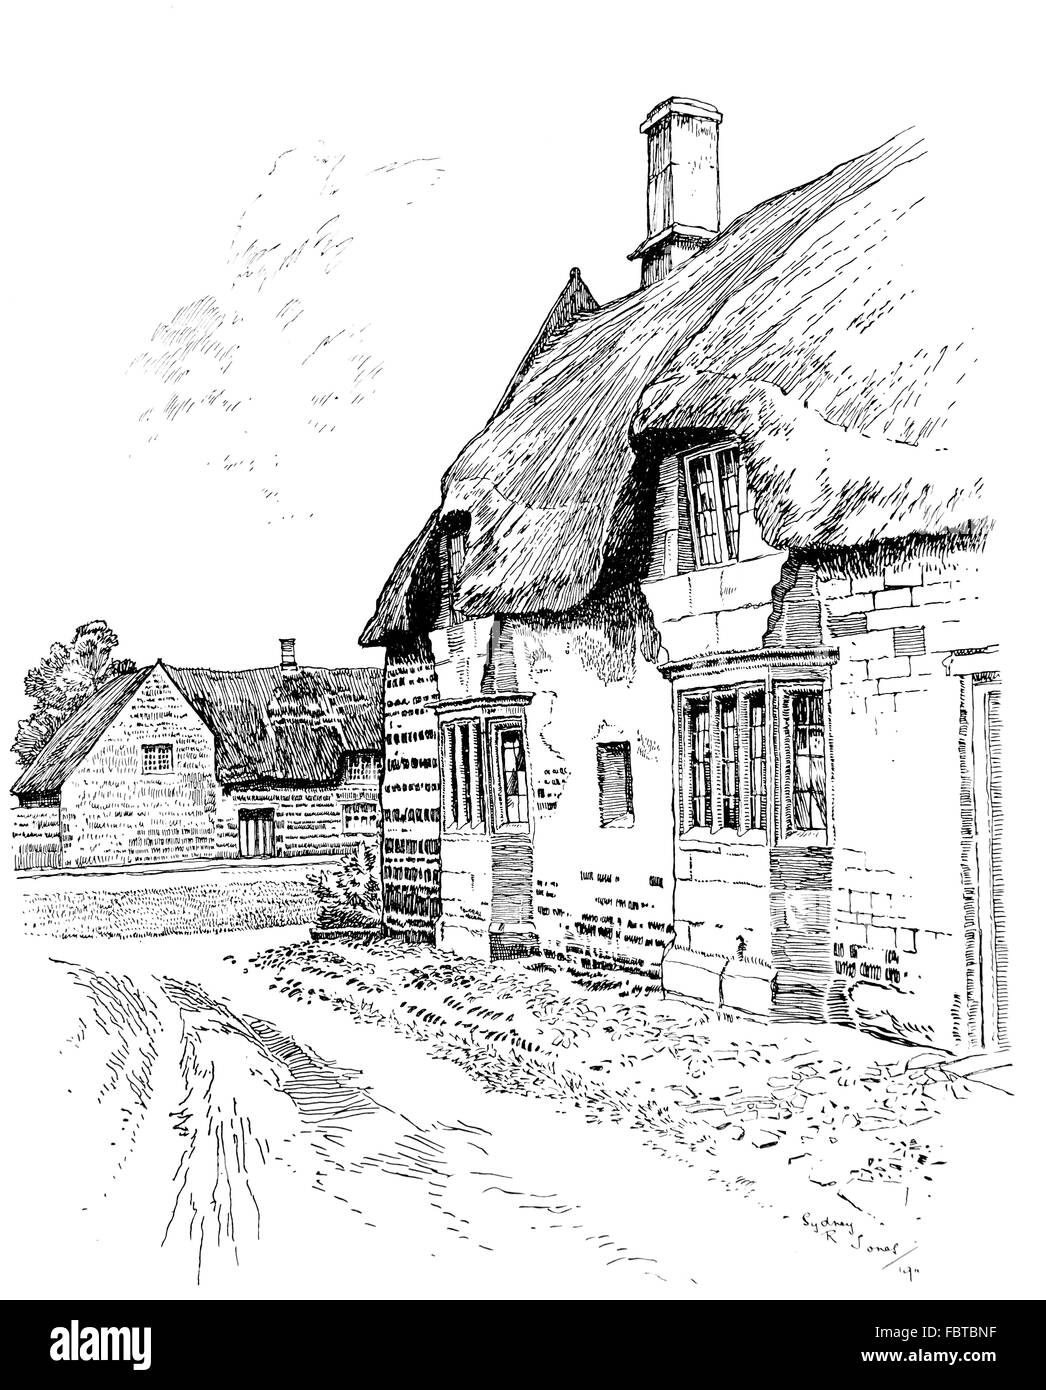 Royaume-uni, Angleterre, Rutland, Caldecott, ancienne chaumière avec fenêtres en baie à côté de la route en passant par village, en 1911, l'illustration de la ligne b Banque D'Images